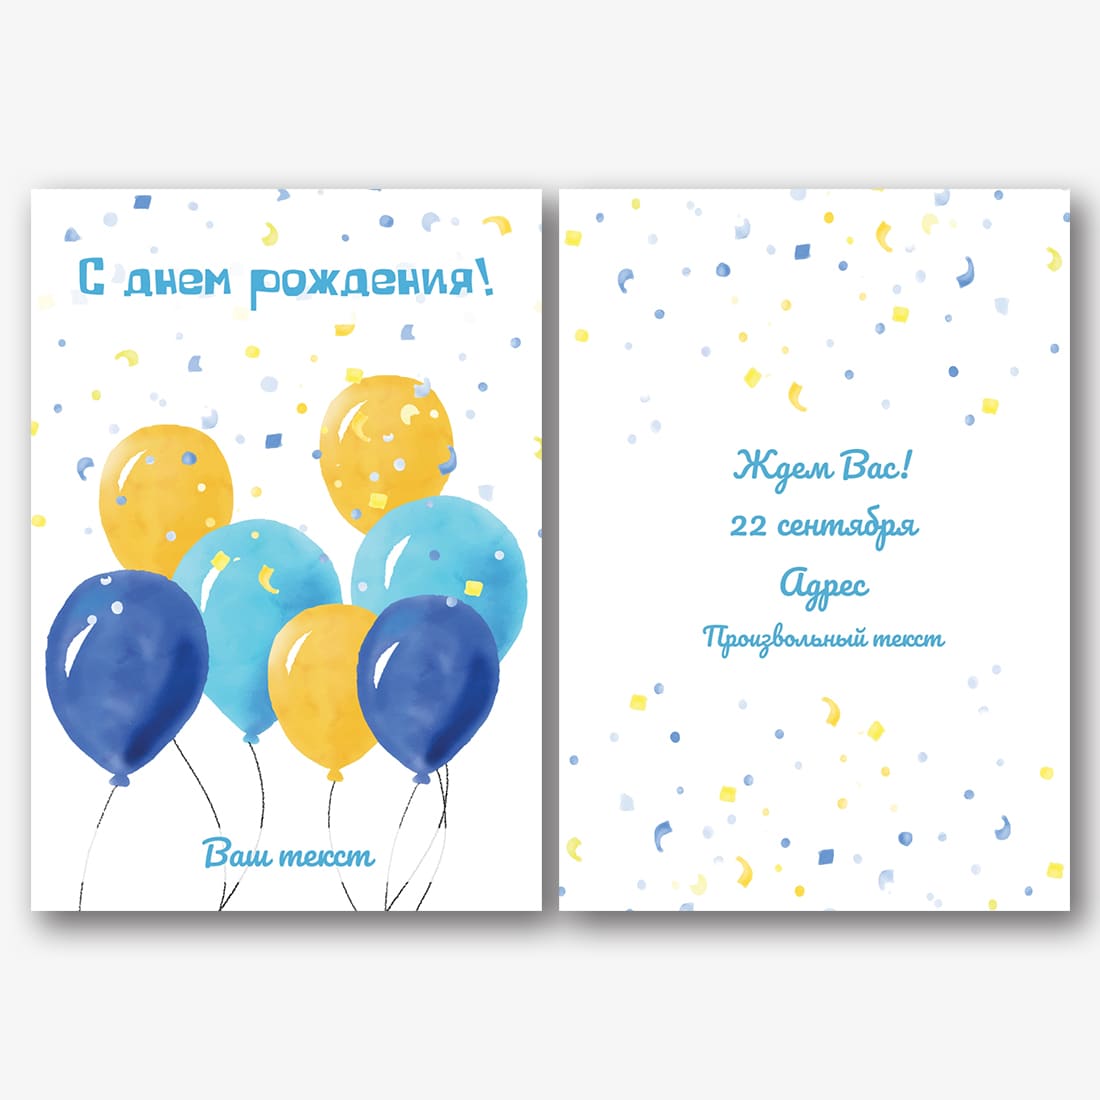 Как выполняется печать открыток «C днем рождения»?